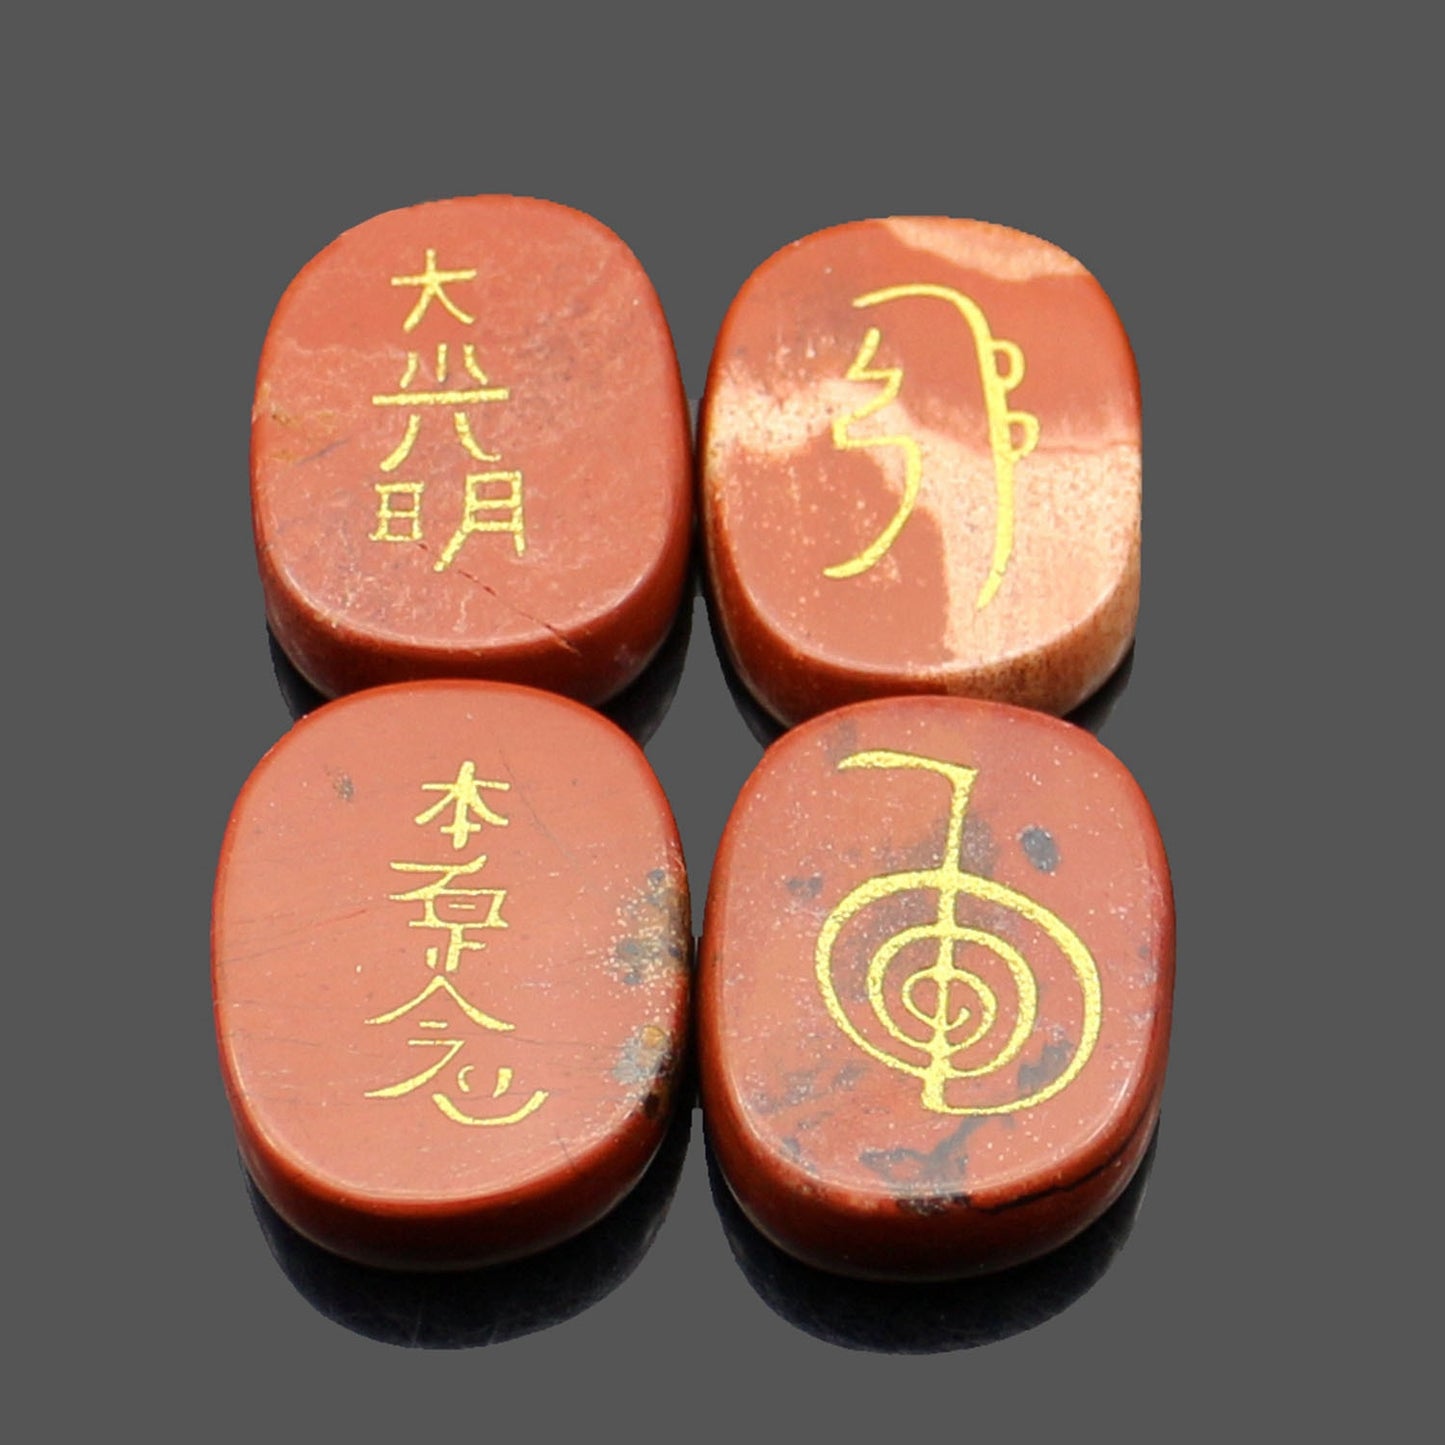 four reiki symbol engraved stones chokurei seihiki honshazeshonen daikomyo  (power, emotion, distance, higher level or master) redstone